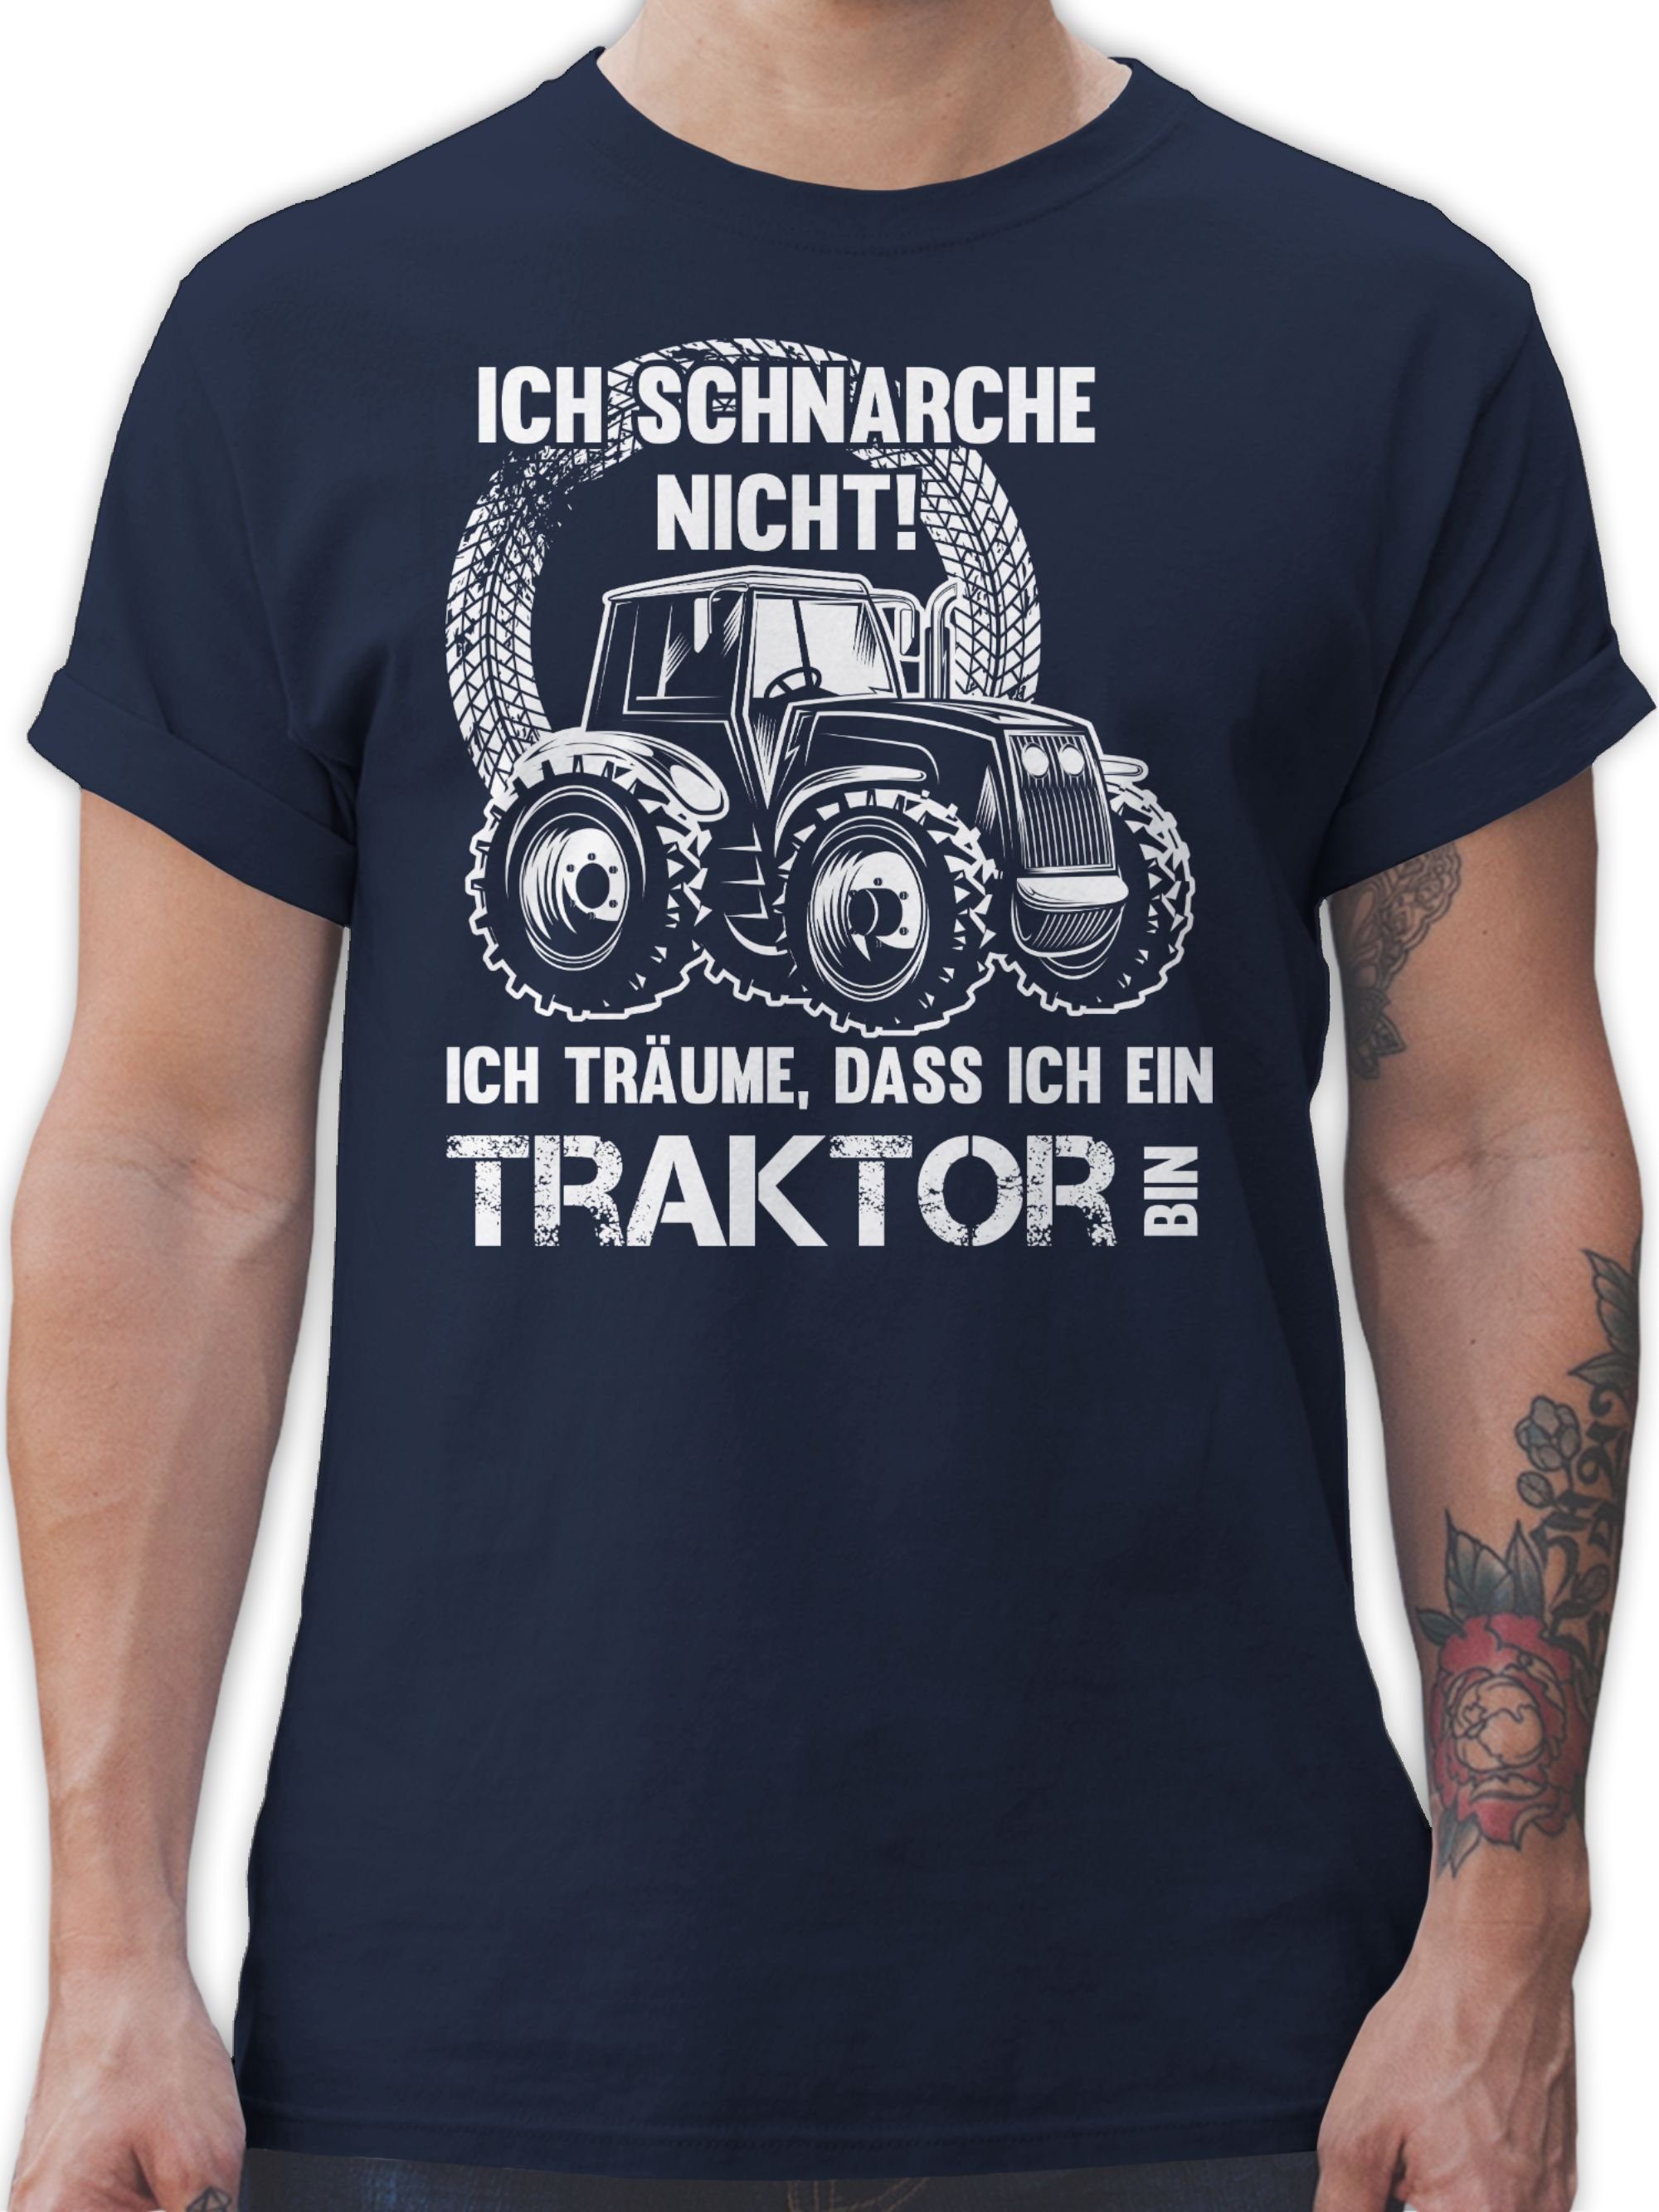 Shirtracer T-Shirt Ich schnarche Navy dass ich ich bin träume Blau ein 02 Traktor Traktor nicht